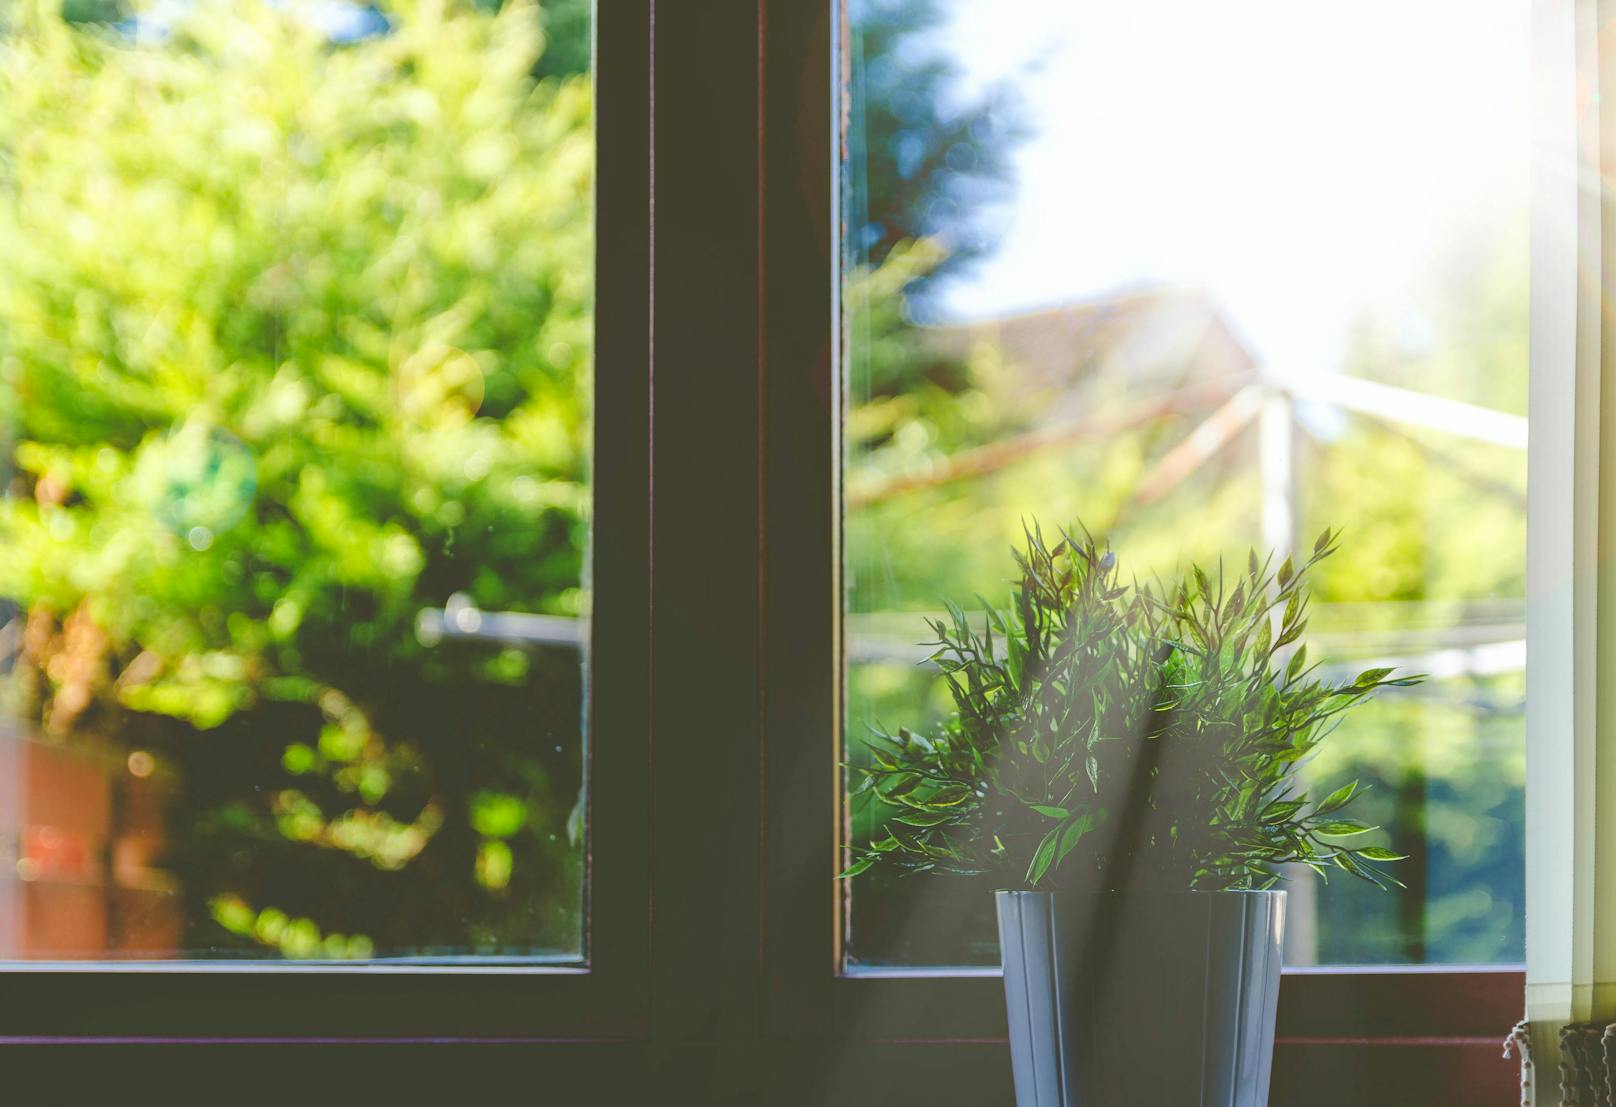 <strong>Fenster putzen:&nbsp;</strong>Essig eignet sich auch hervorragend zum Fensterputzen. Der Essig löst Flecken sehr leicht und sorgt dafür, dass die Fenster streifen- und schlierenfrei sind. Das liegt daran, dass die meisten solcher Schlieren Kalkspuren sind – und Essig löst die auf.